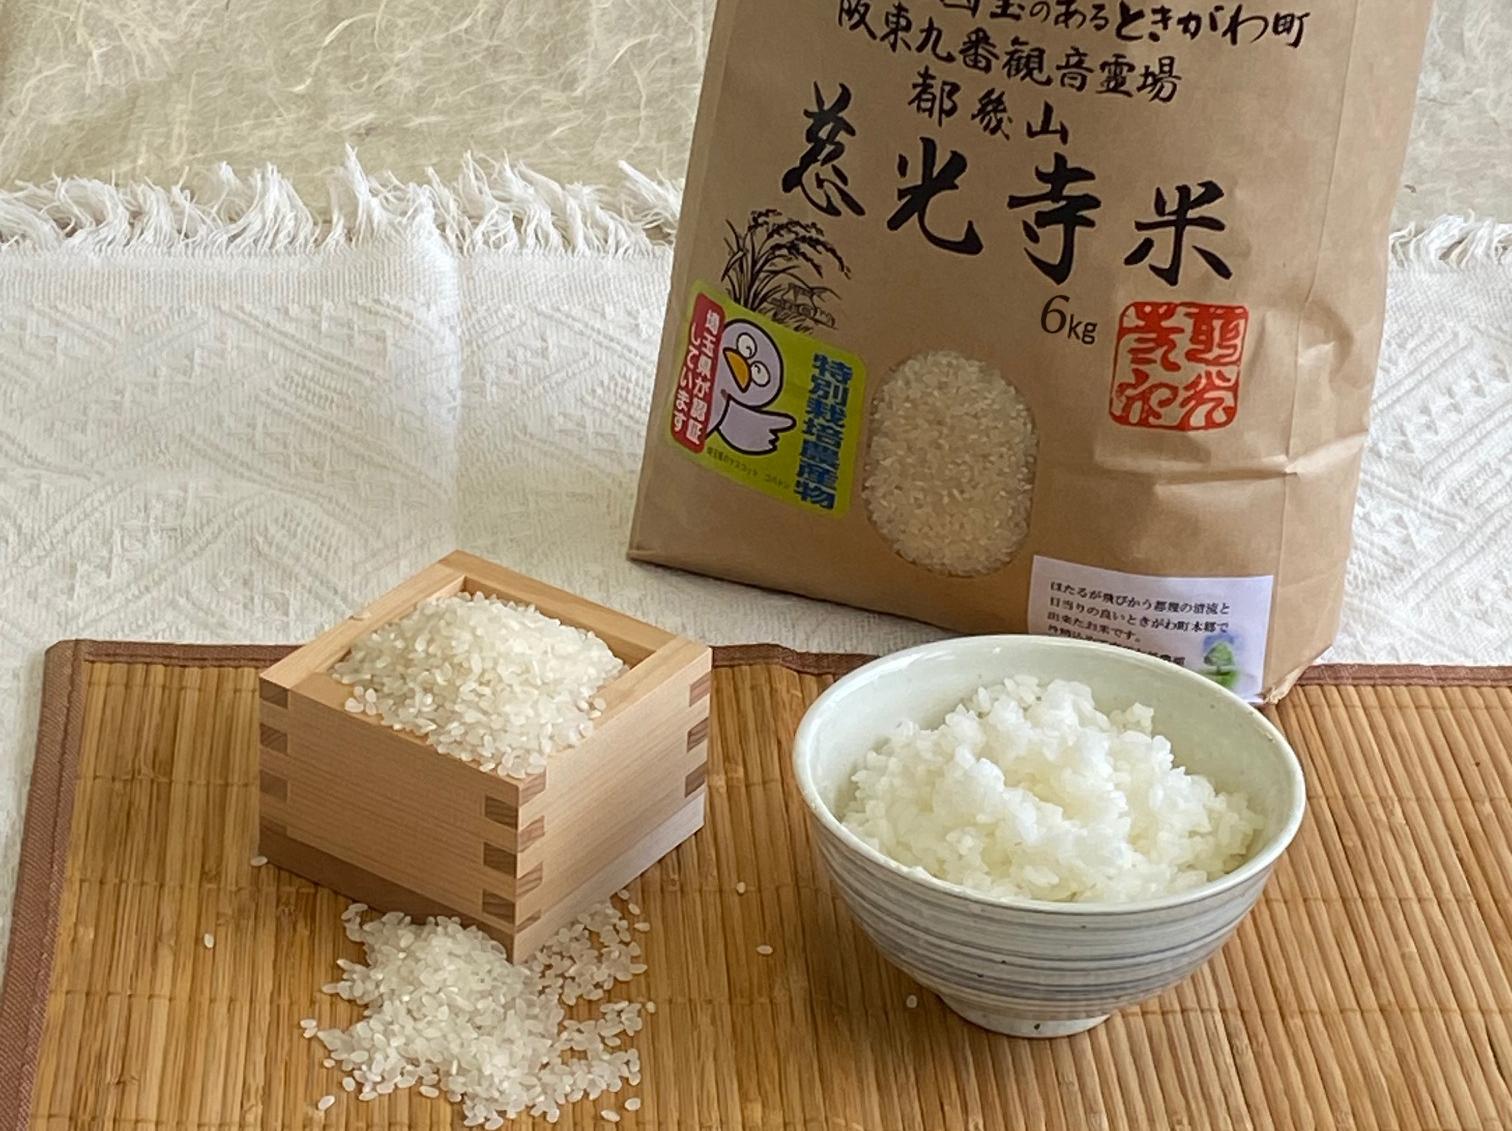 
慈光寺米(コシヒカリ)特別栽培米６kg A002
